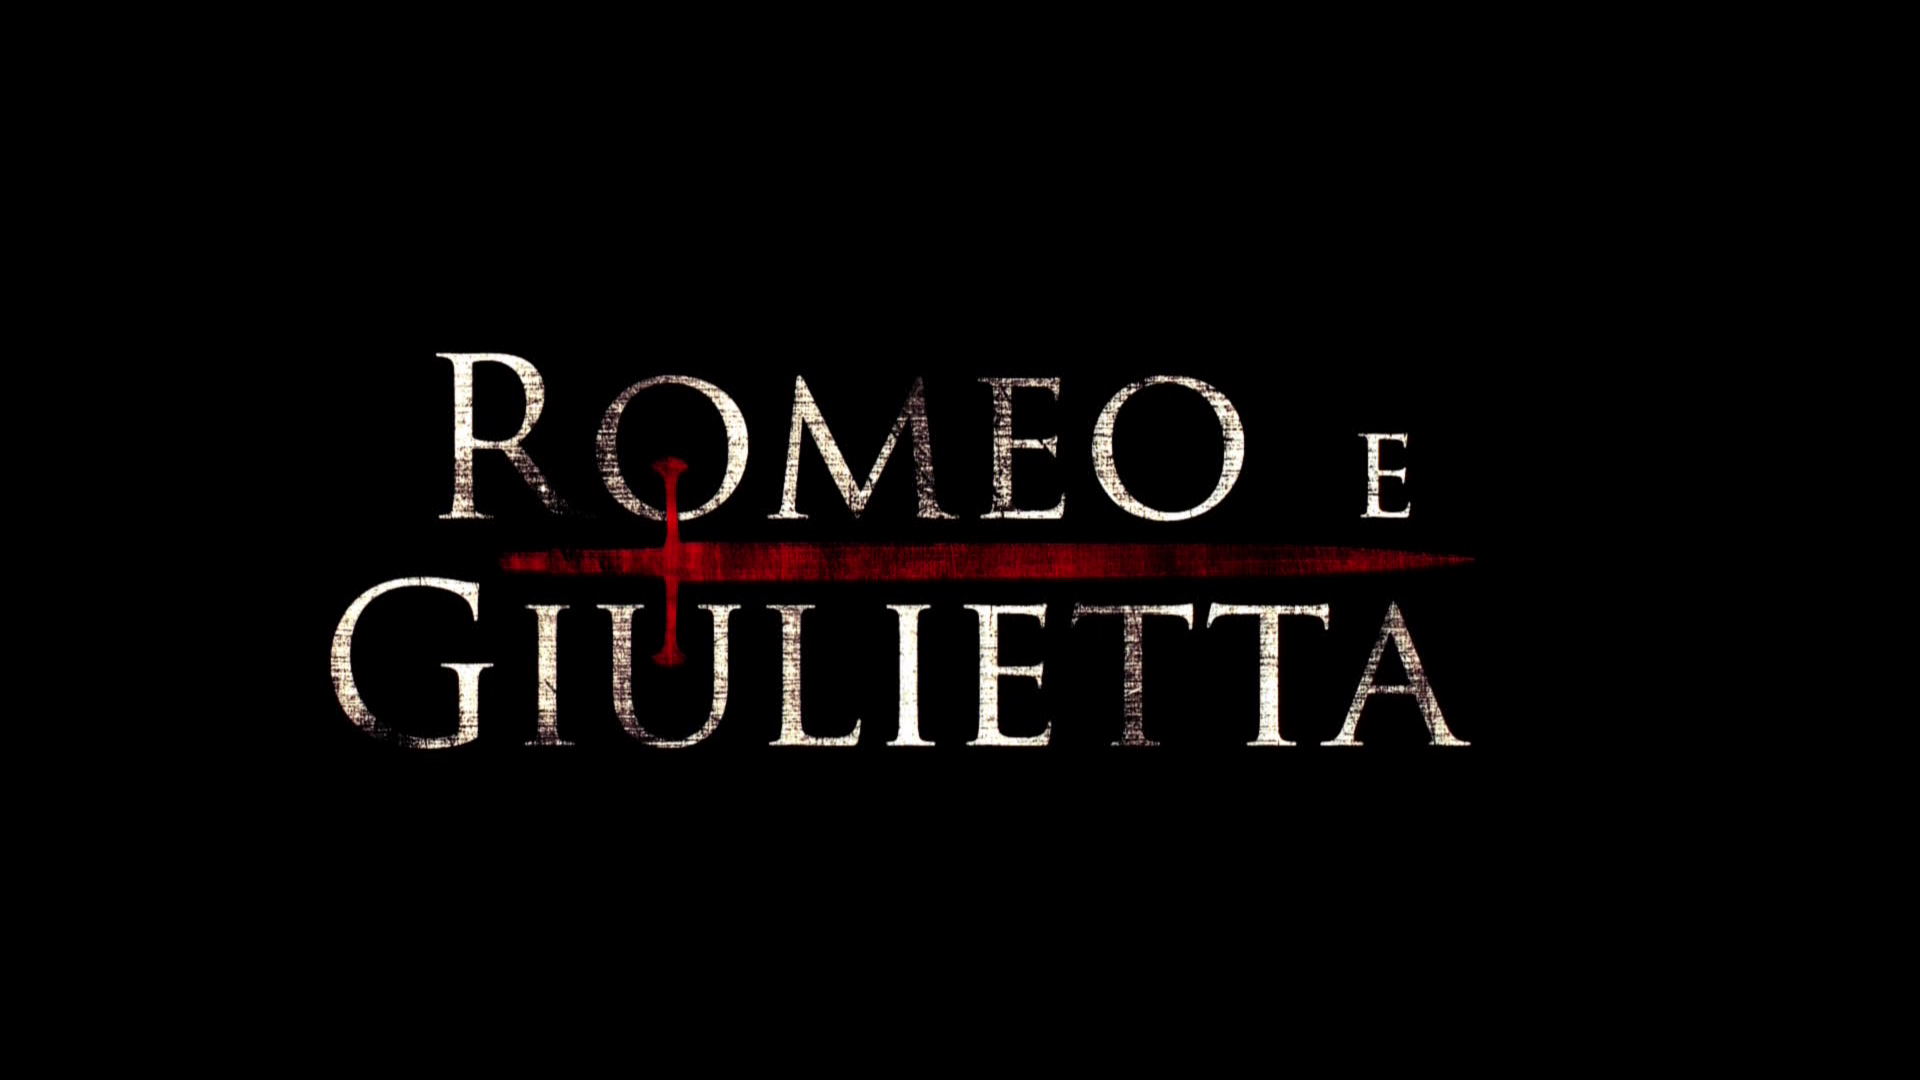 Luxvide » Romeo e Giulietta - Luxvide